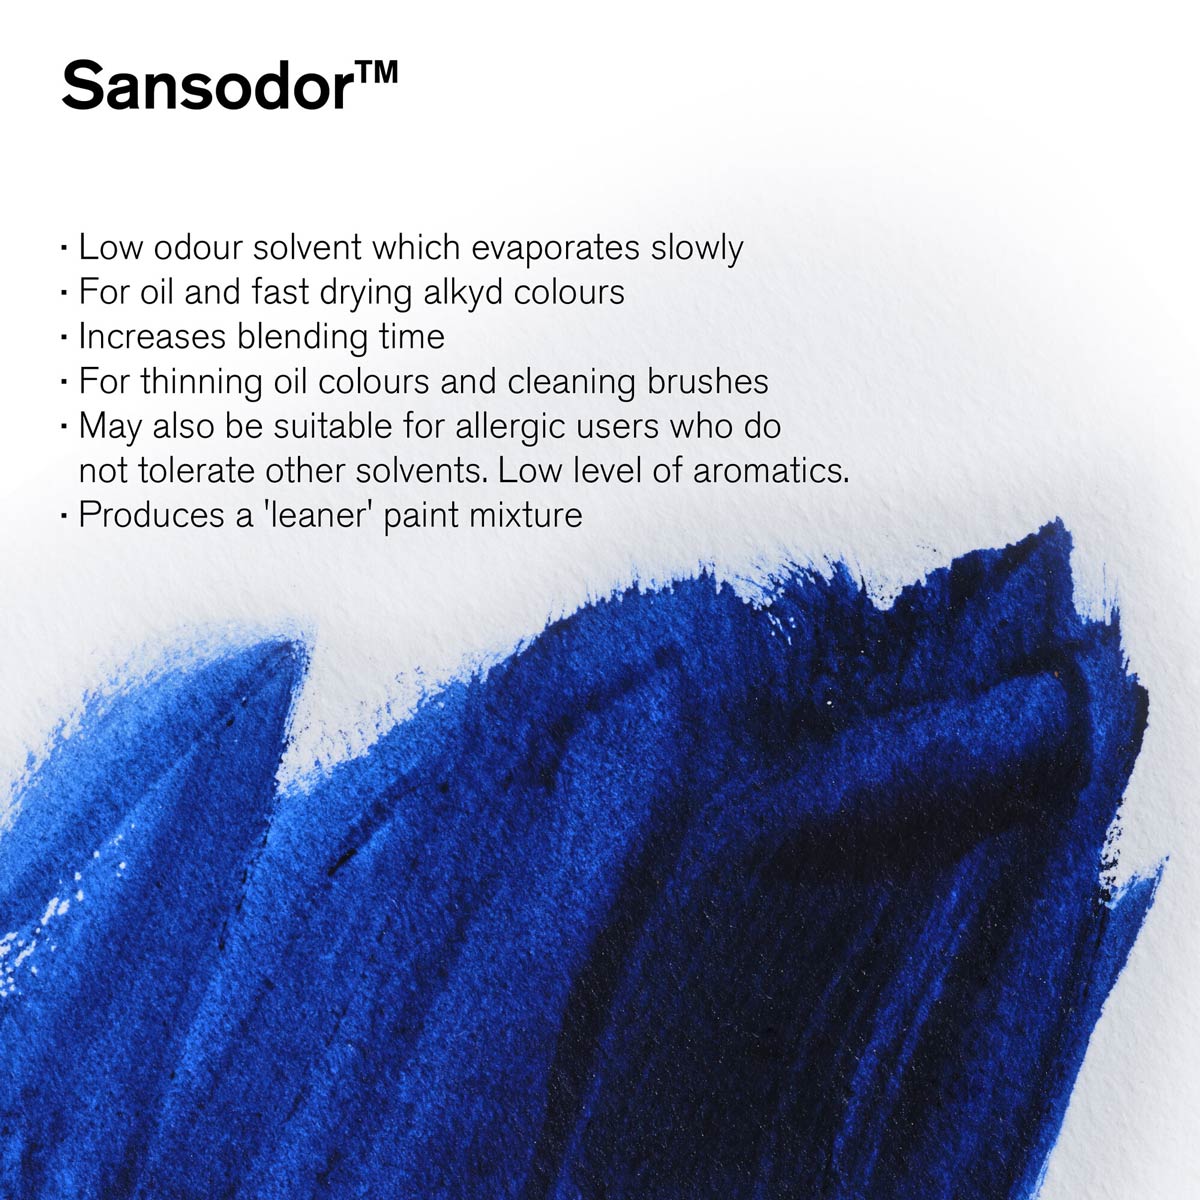 Winsor und Newton - Sansodor Low -Geruchslösungsmittelreiniger - 500 ml